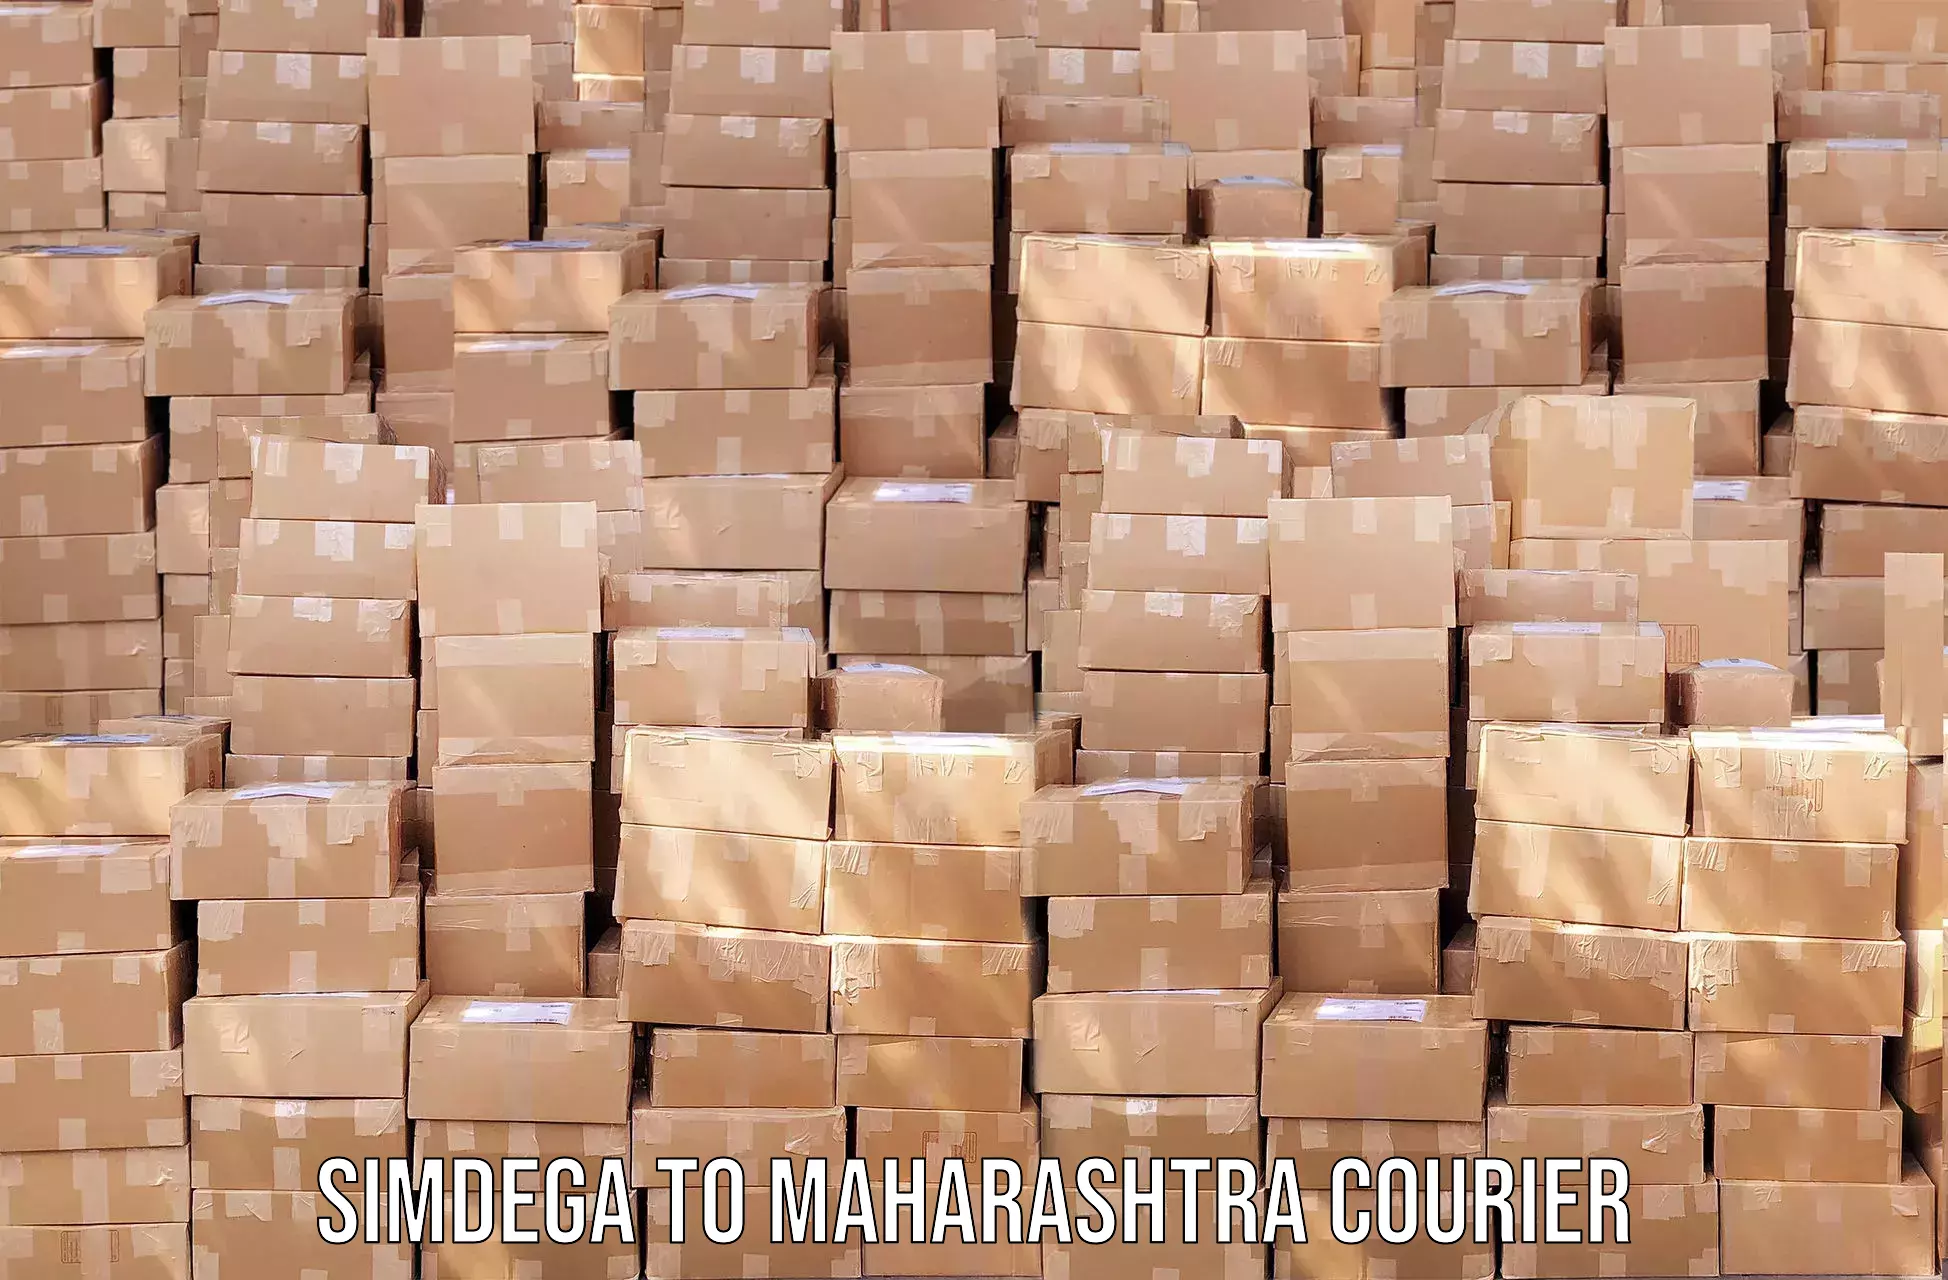 Custom courier strategies Simdega to Maharashtra